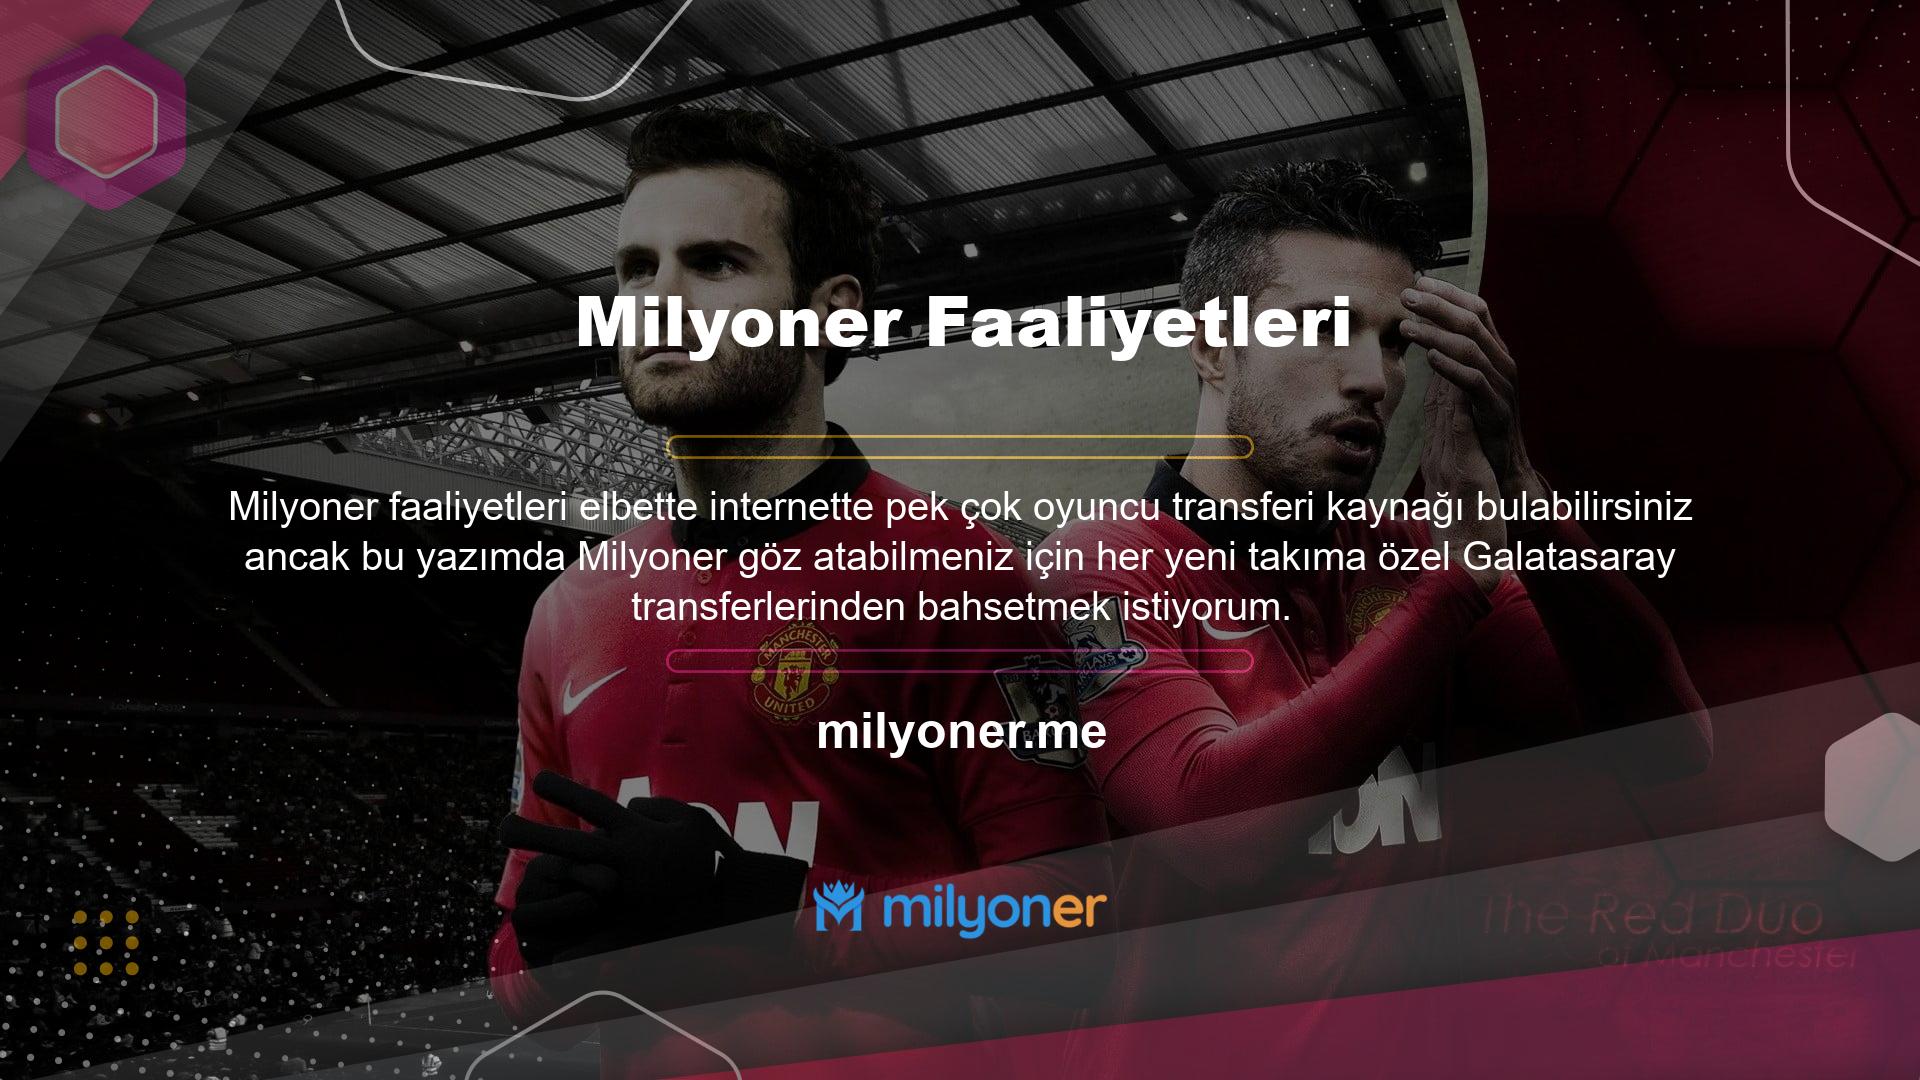 Sayfamıza Galatasaray'dan yeni oyuncu yorumu geldi